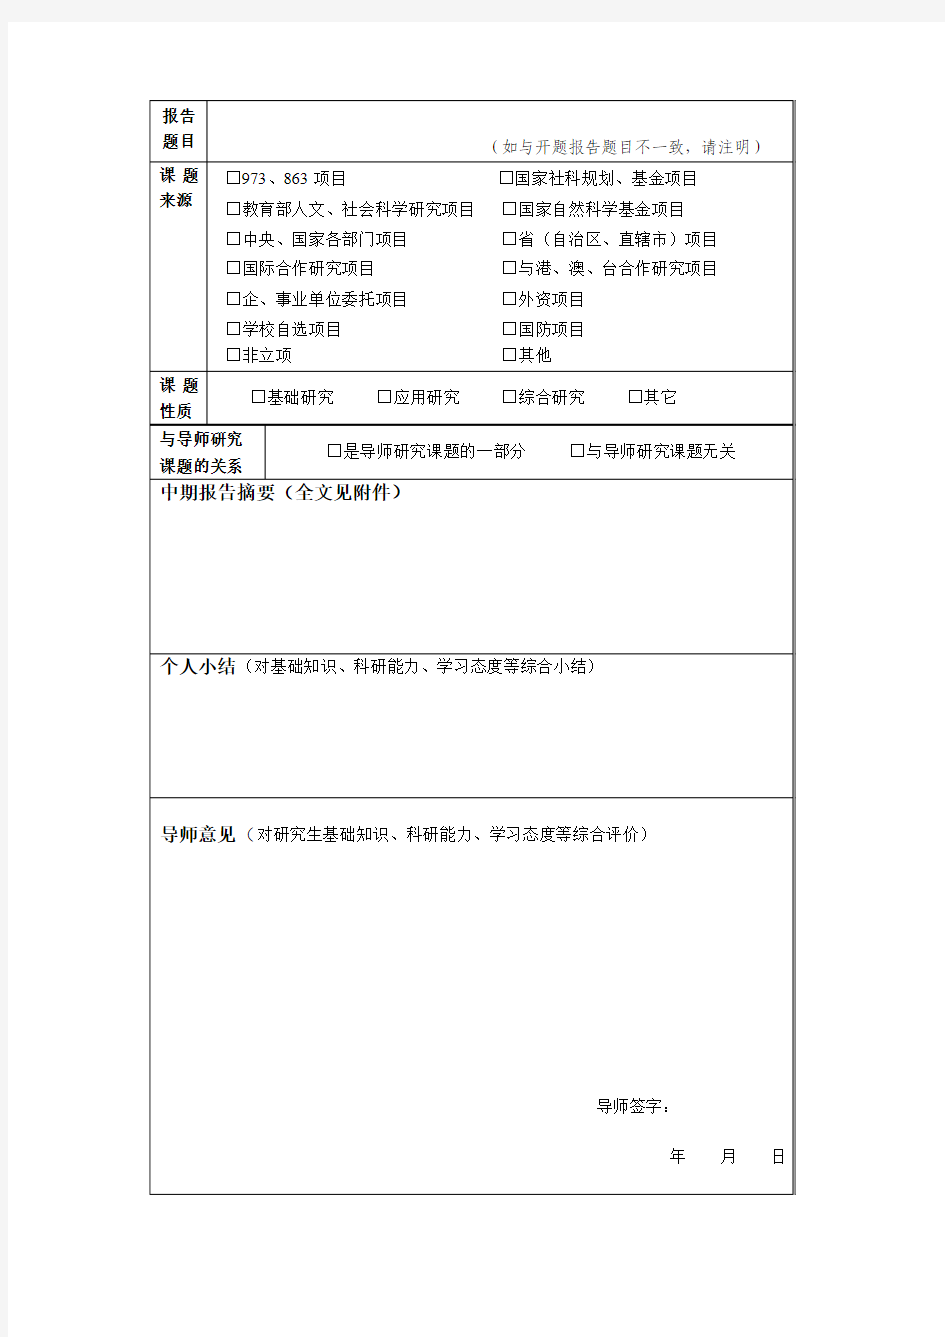 中国科学院研究生院研究生中期考核申请书